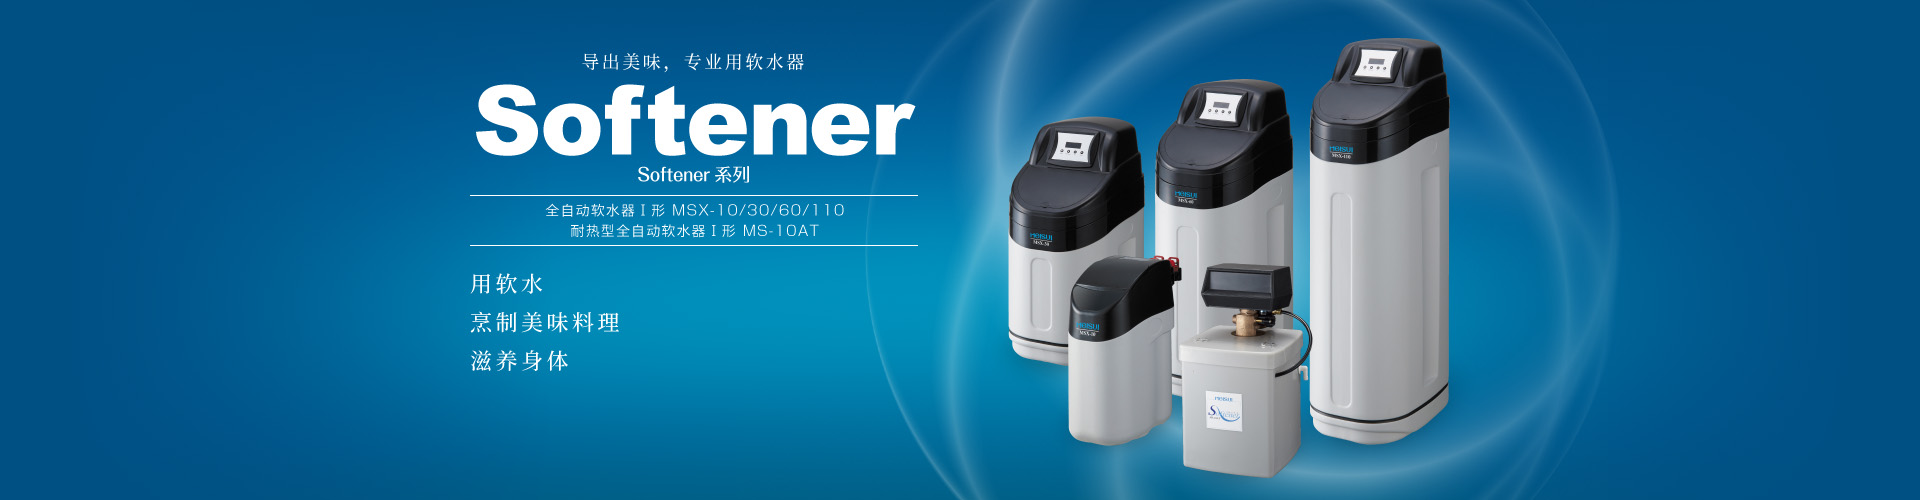 Softener系列MSX系列专业用全自动软水器Ⅰ形| 净水器的美水